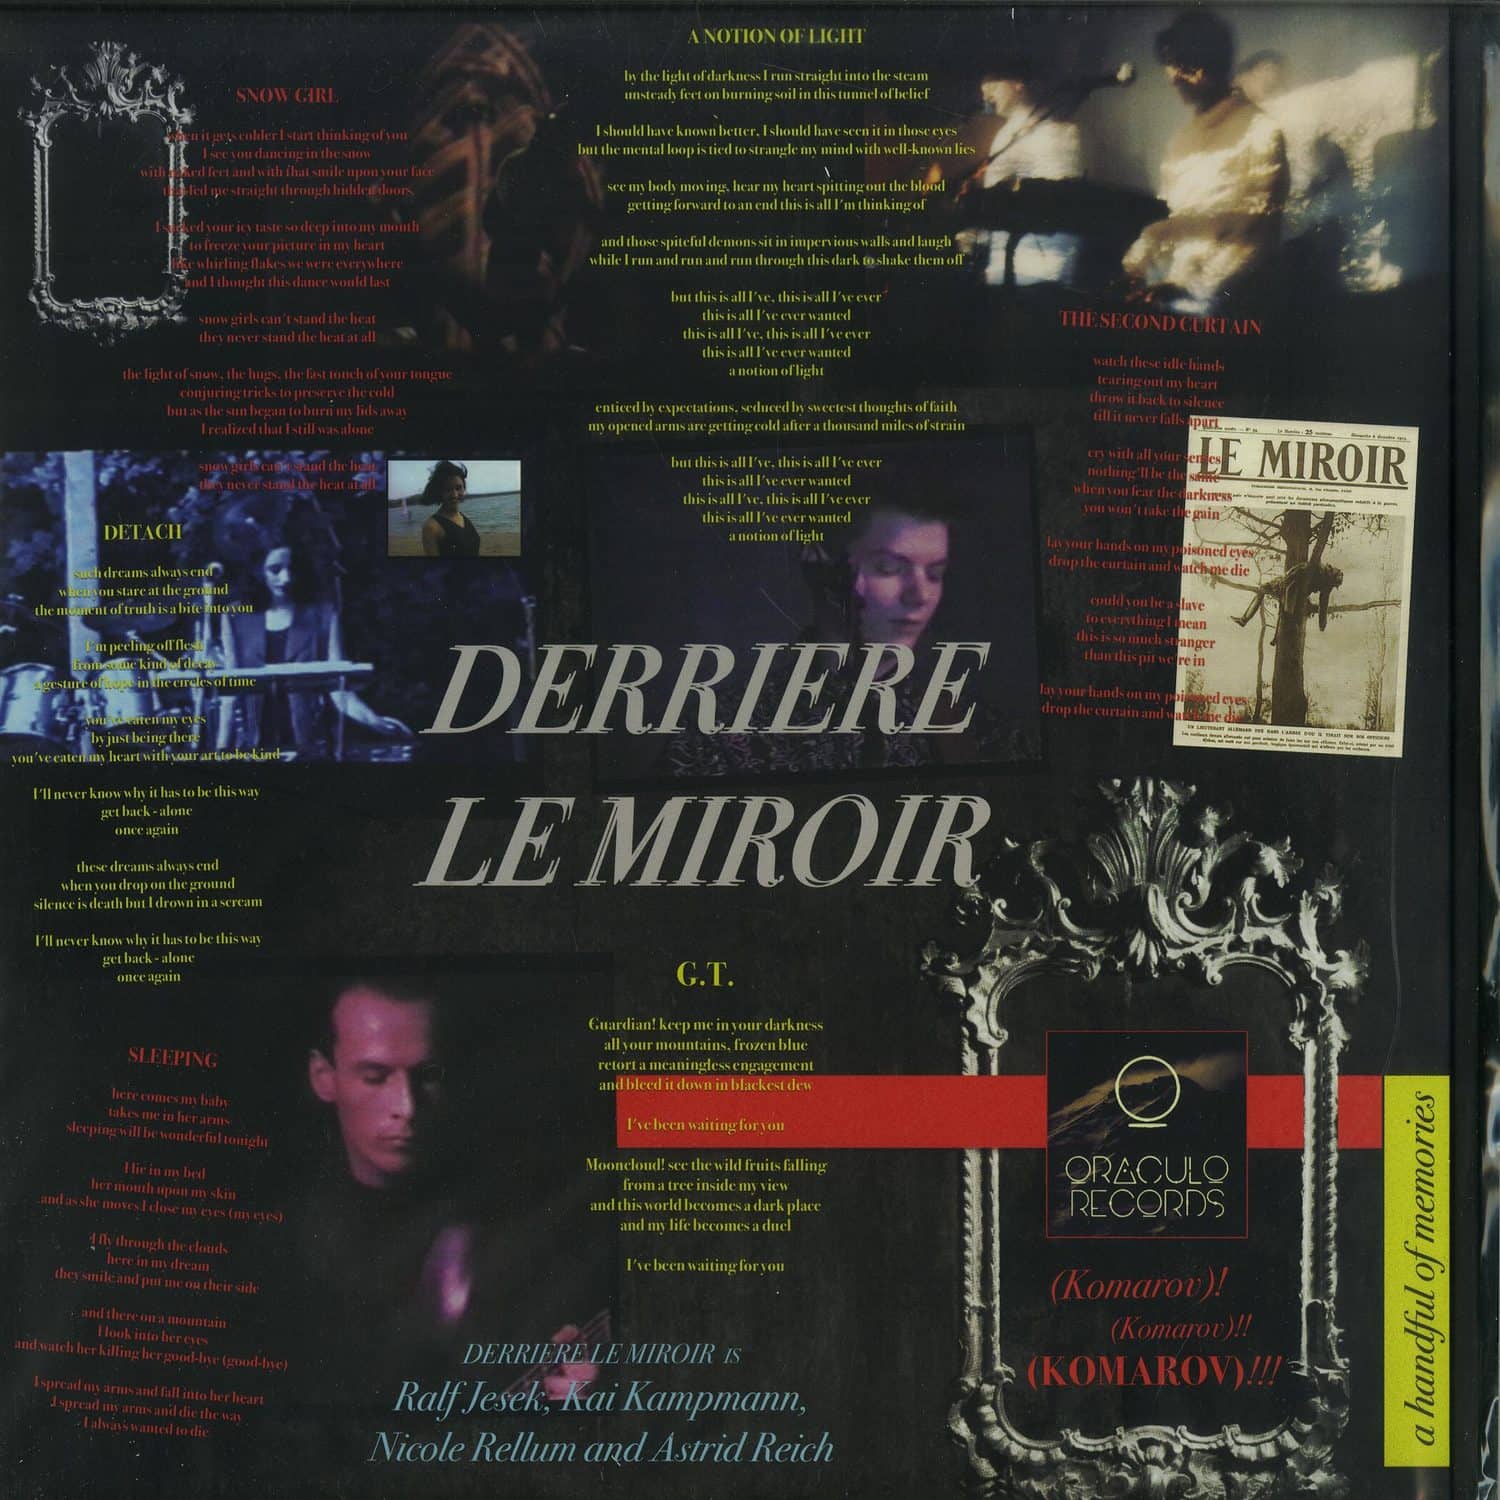 Derriare Le Miroir - A HANDFUL OF MEMORIES 12